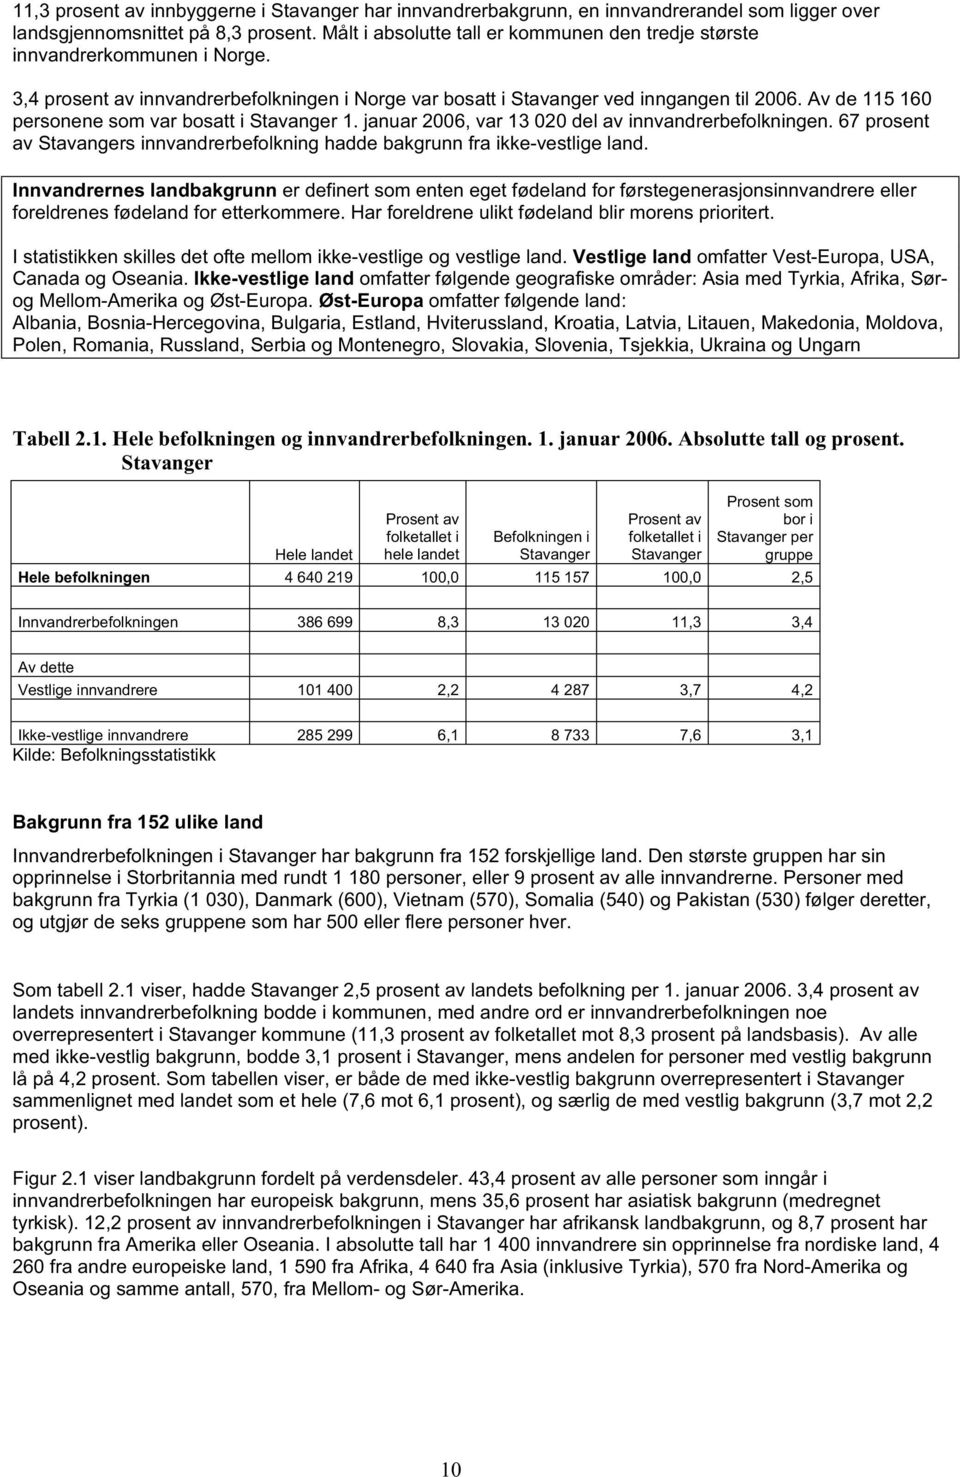 Av de 115 160 personene som var bosatt i Stavanger 1. januar 2006, var 13 020 del av innvandrerbefolkningen. 67 prosent av Stavangers innvandrerbefolkning hadde bakgrunn fra ikke-vestlige land.